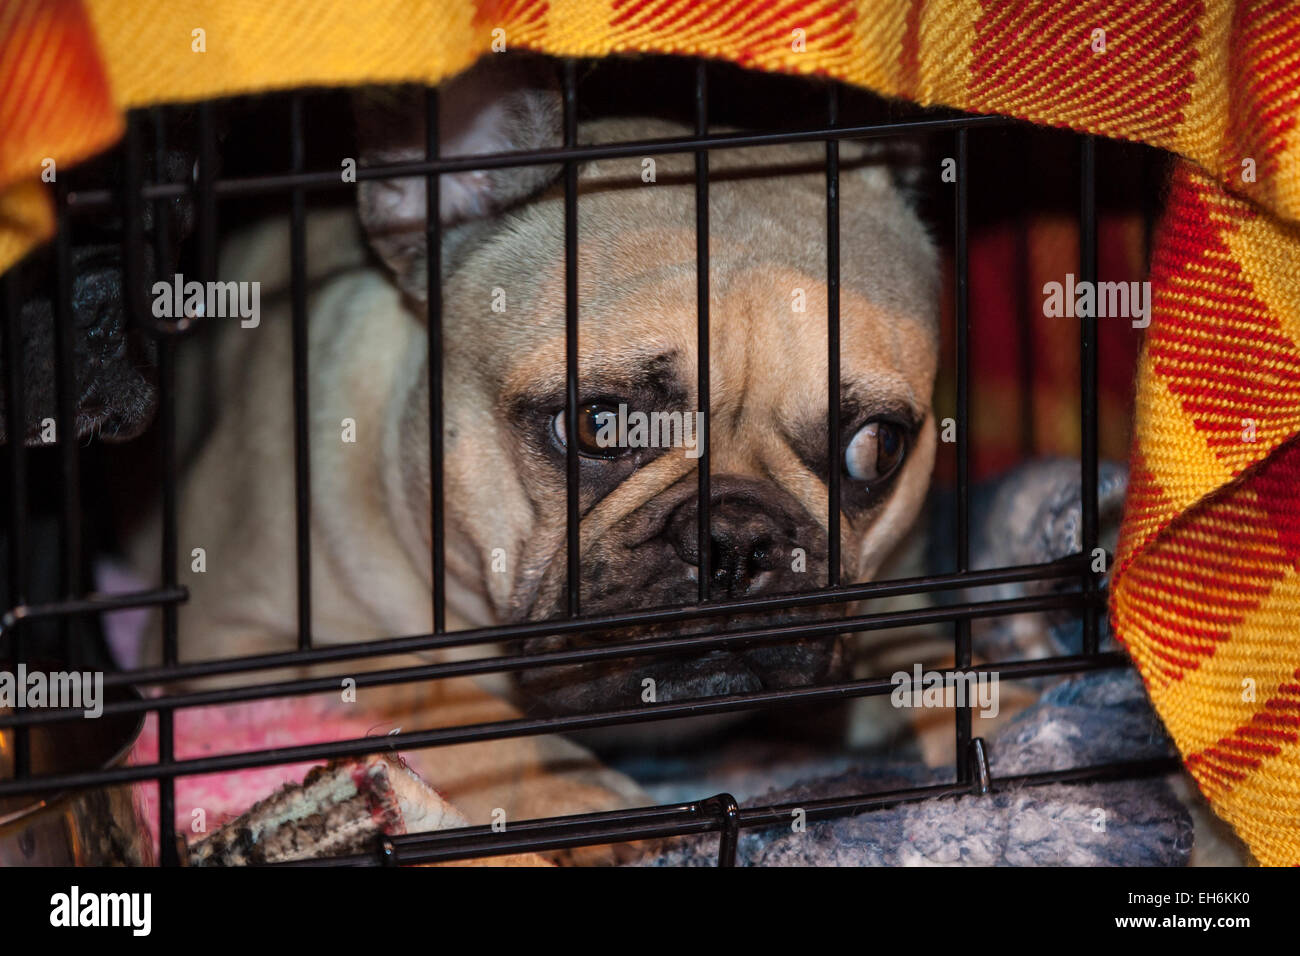 Birmingham, Vereinigtes Königreich. 8. März 2015. Crufts 2015 Spielzeug und Dienstprogramm Tag wo Hunde beurteilen, finden Sie die besten in-Show. Bildnachweis: Steven Reh/Alamy Live News Stockfoto